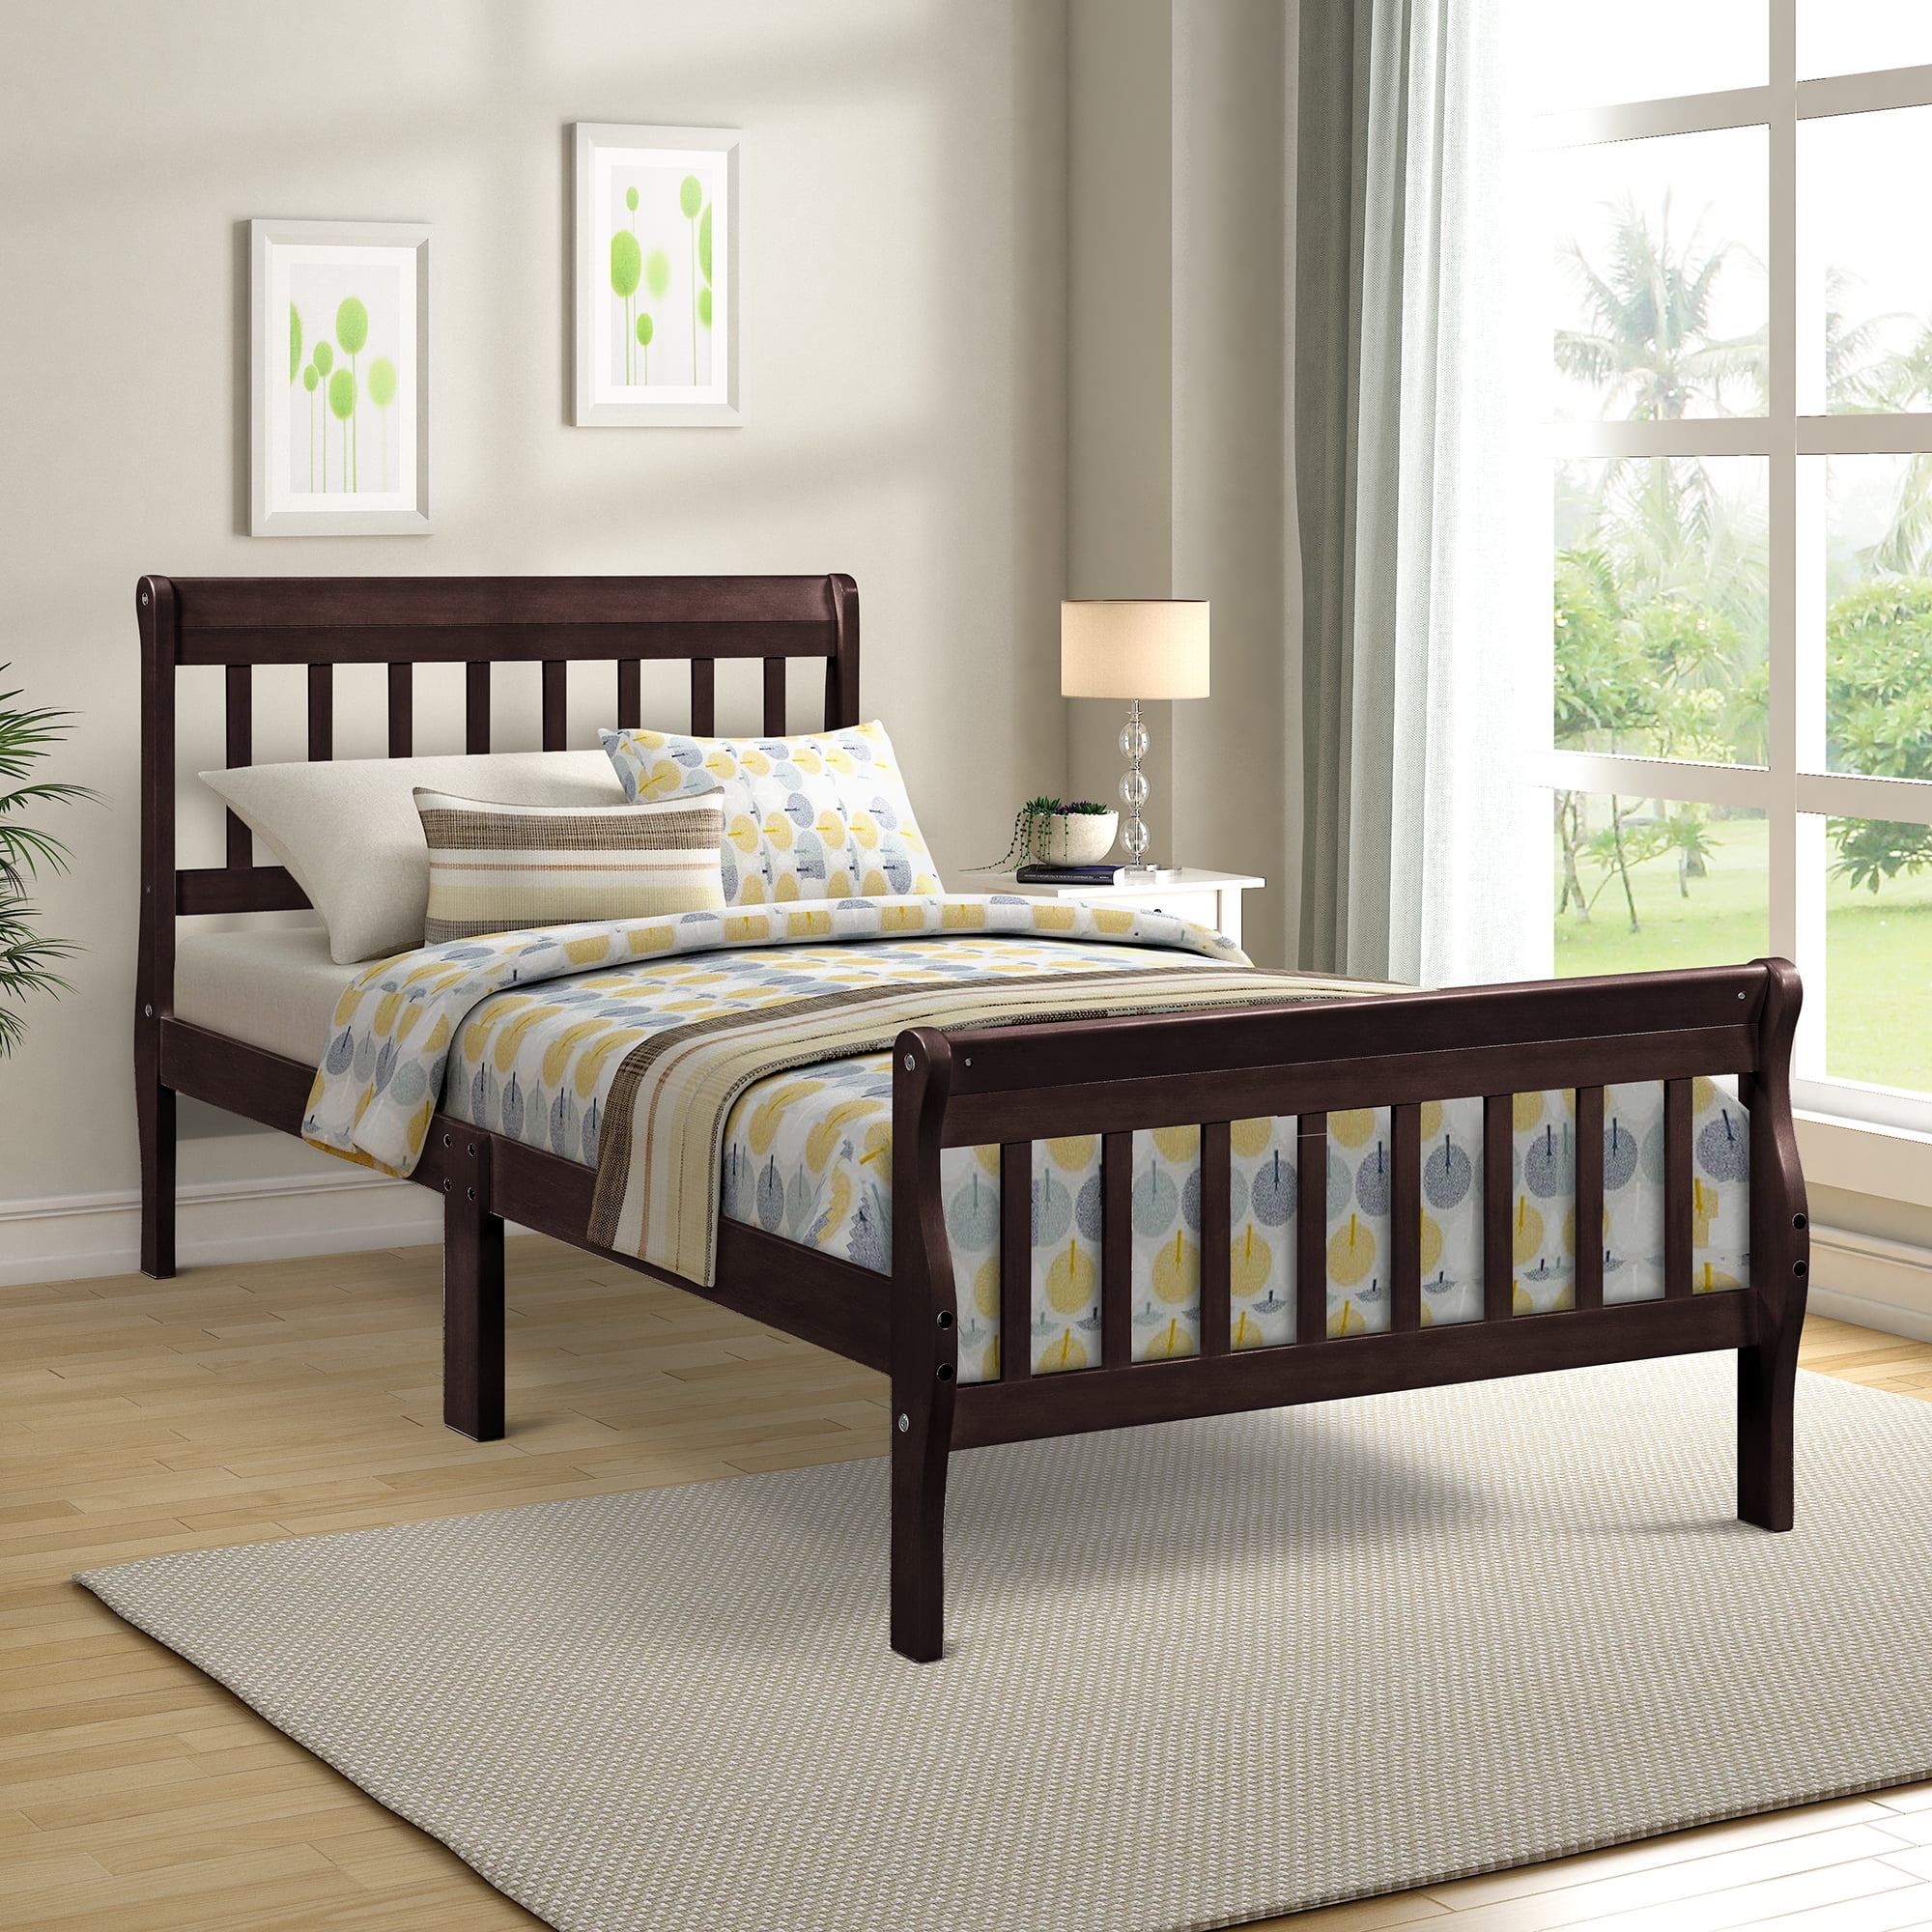 Details about   4 Size Wood Slats Metal Bed Frame Platform Bedroom Mattress Foundation Base US 